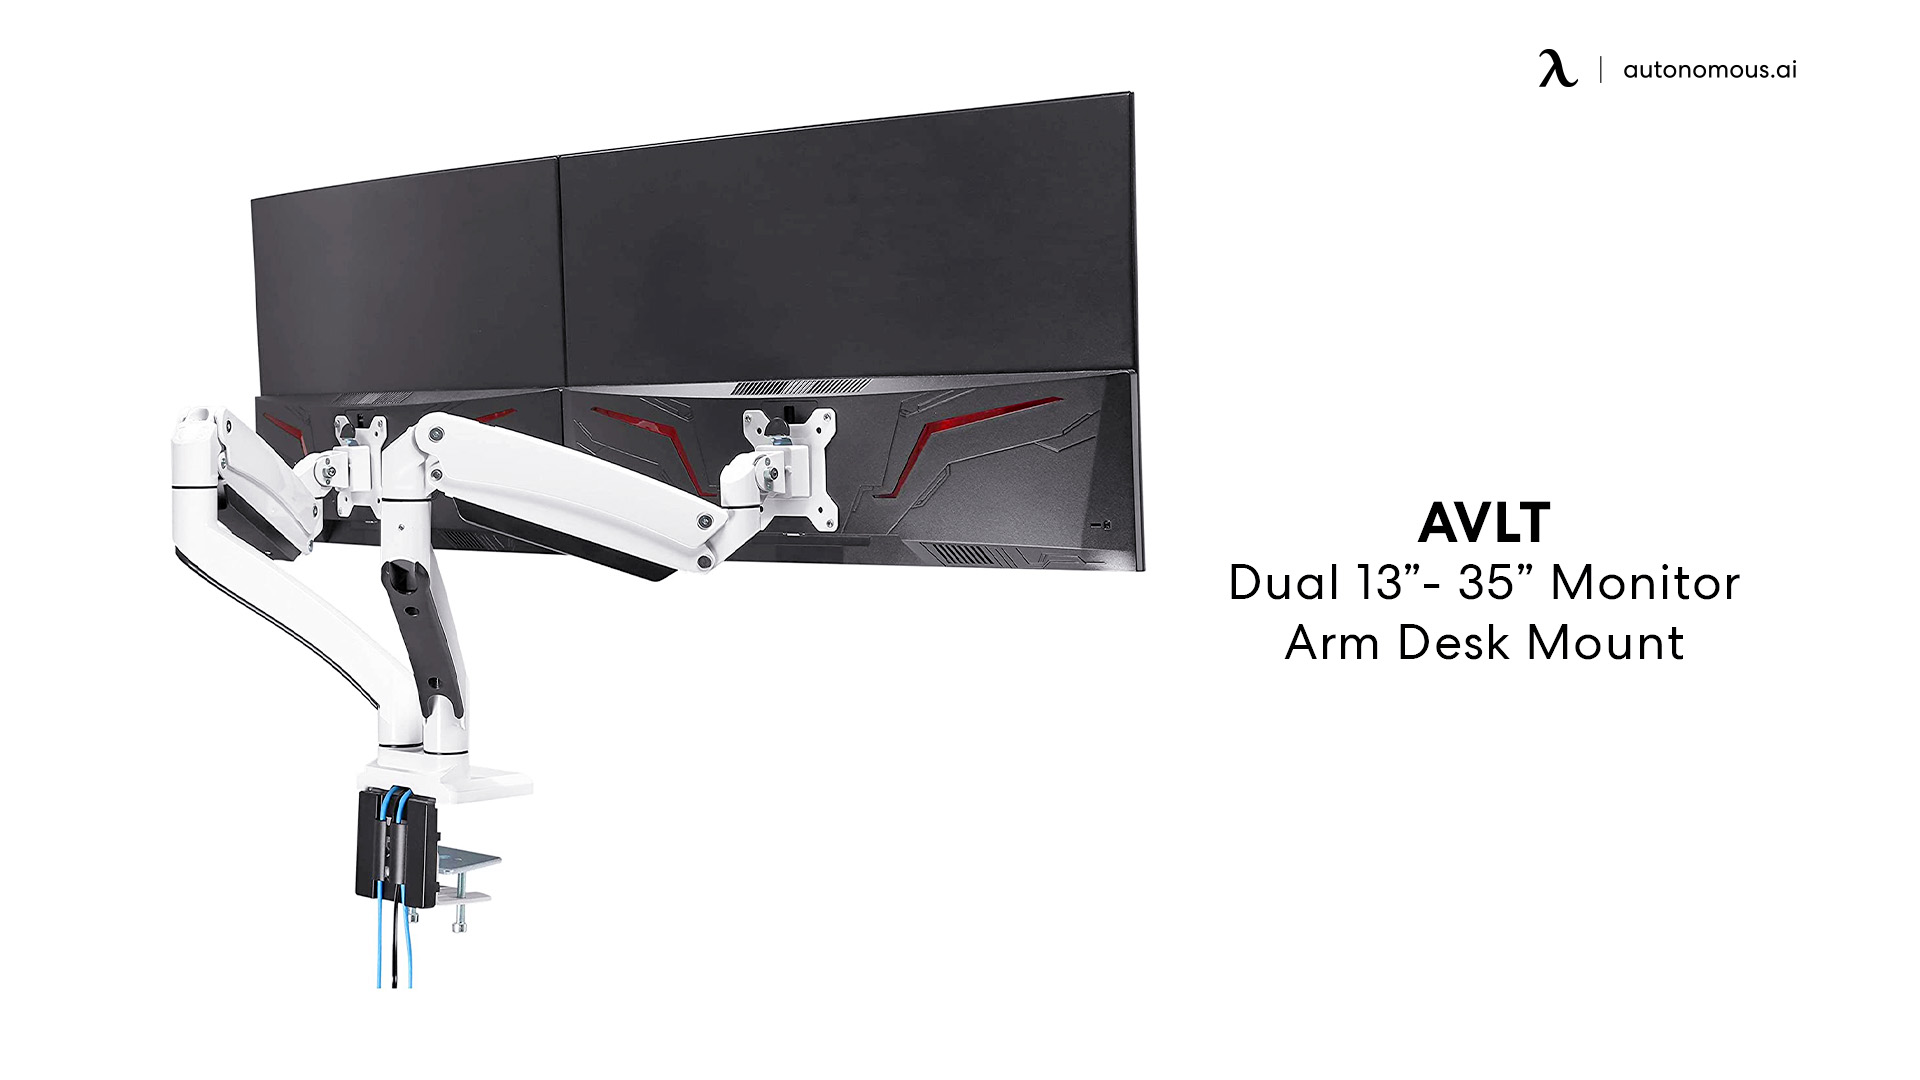 AVLT Dual 13”- 35” Monitor Arm Desk Mount